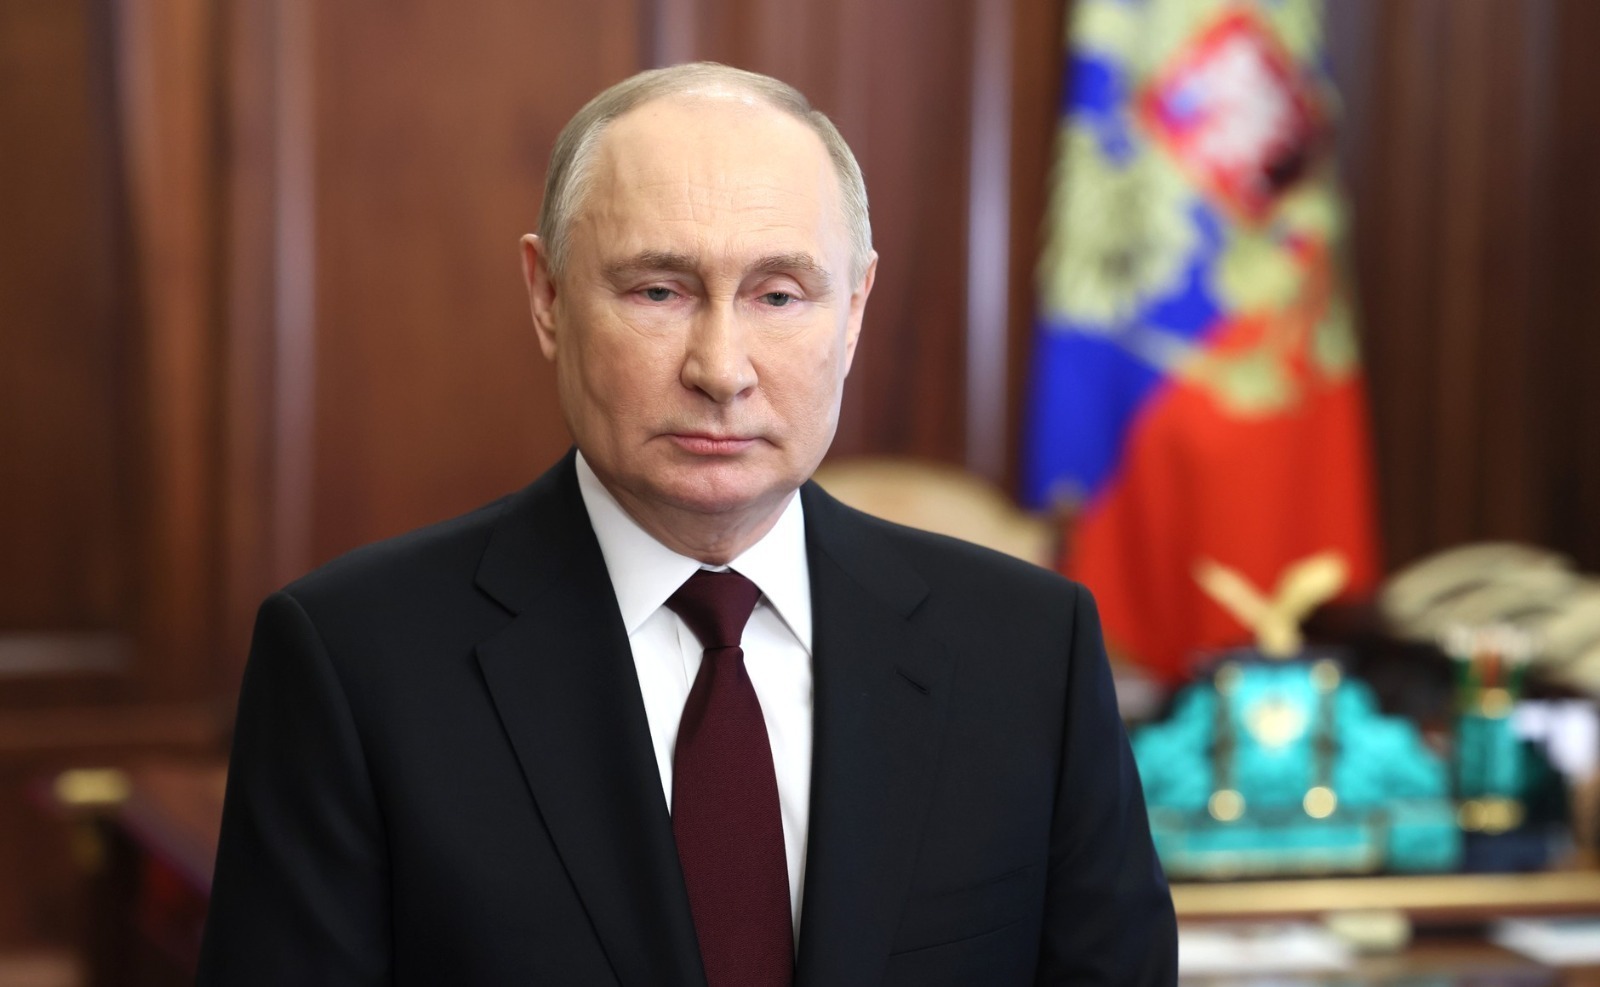 Владимир Путин обратился к россиянам перед голосованием на выборах президента